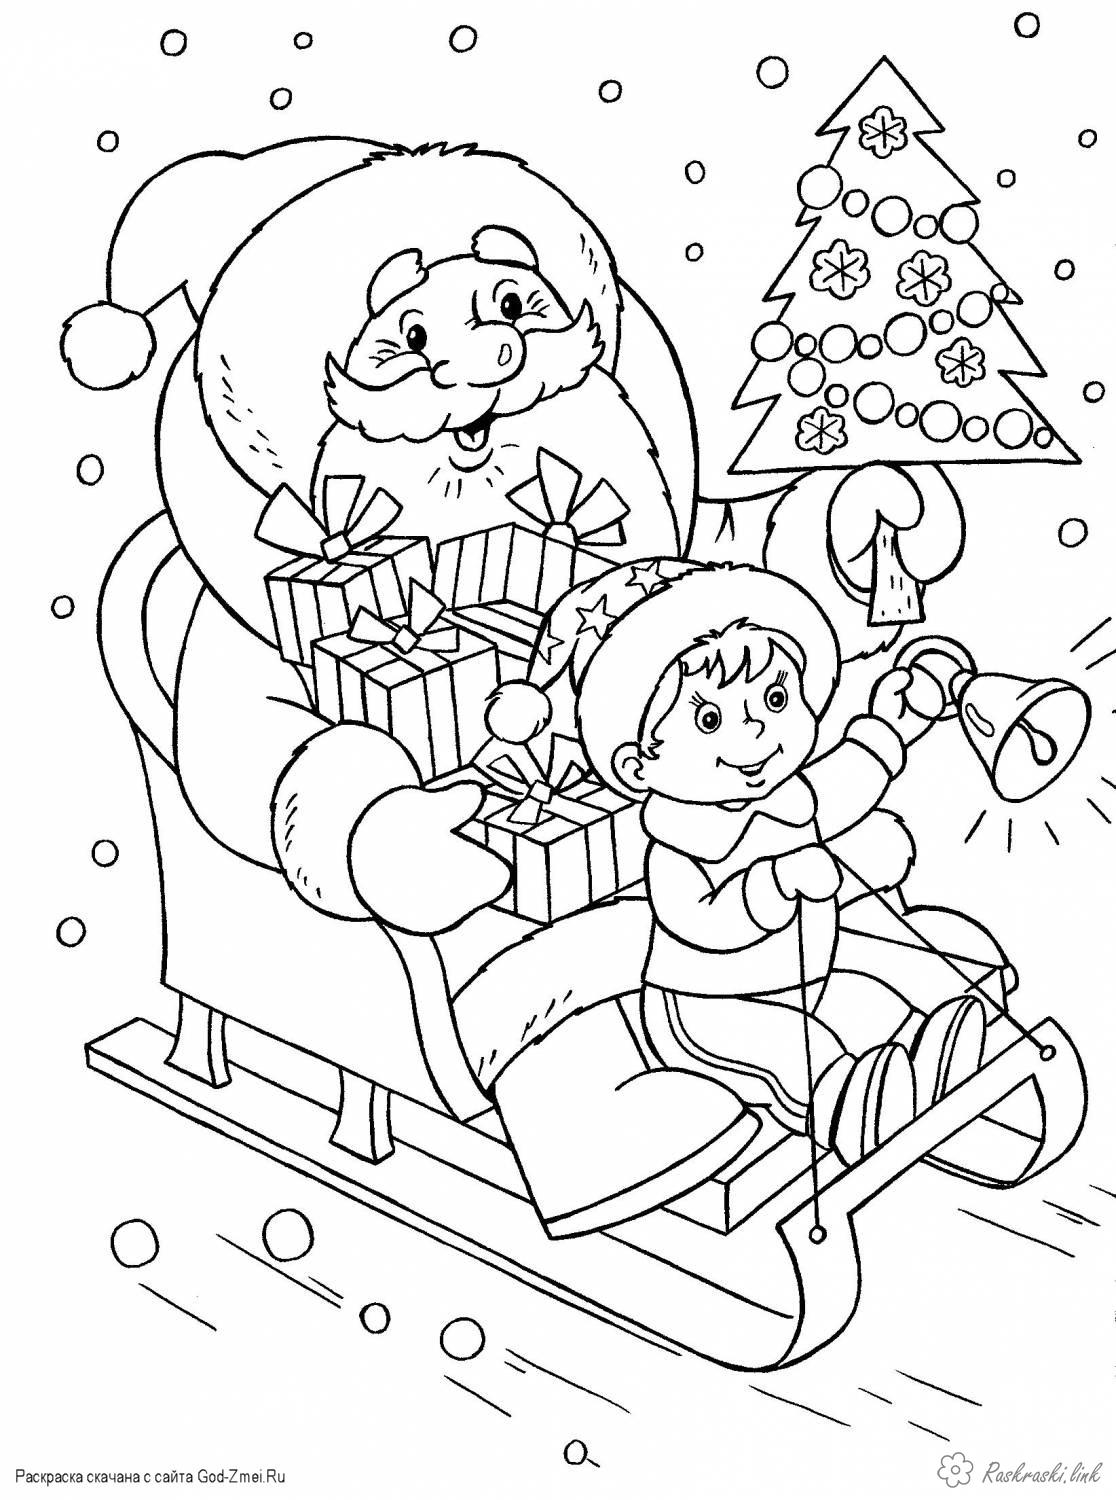 Розмальовки дід Дитяча новорічна розфарбування, дід мороз на санях з подарунками